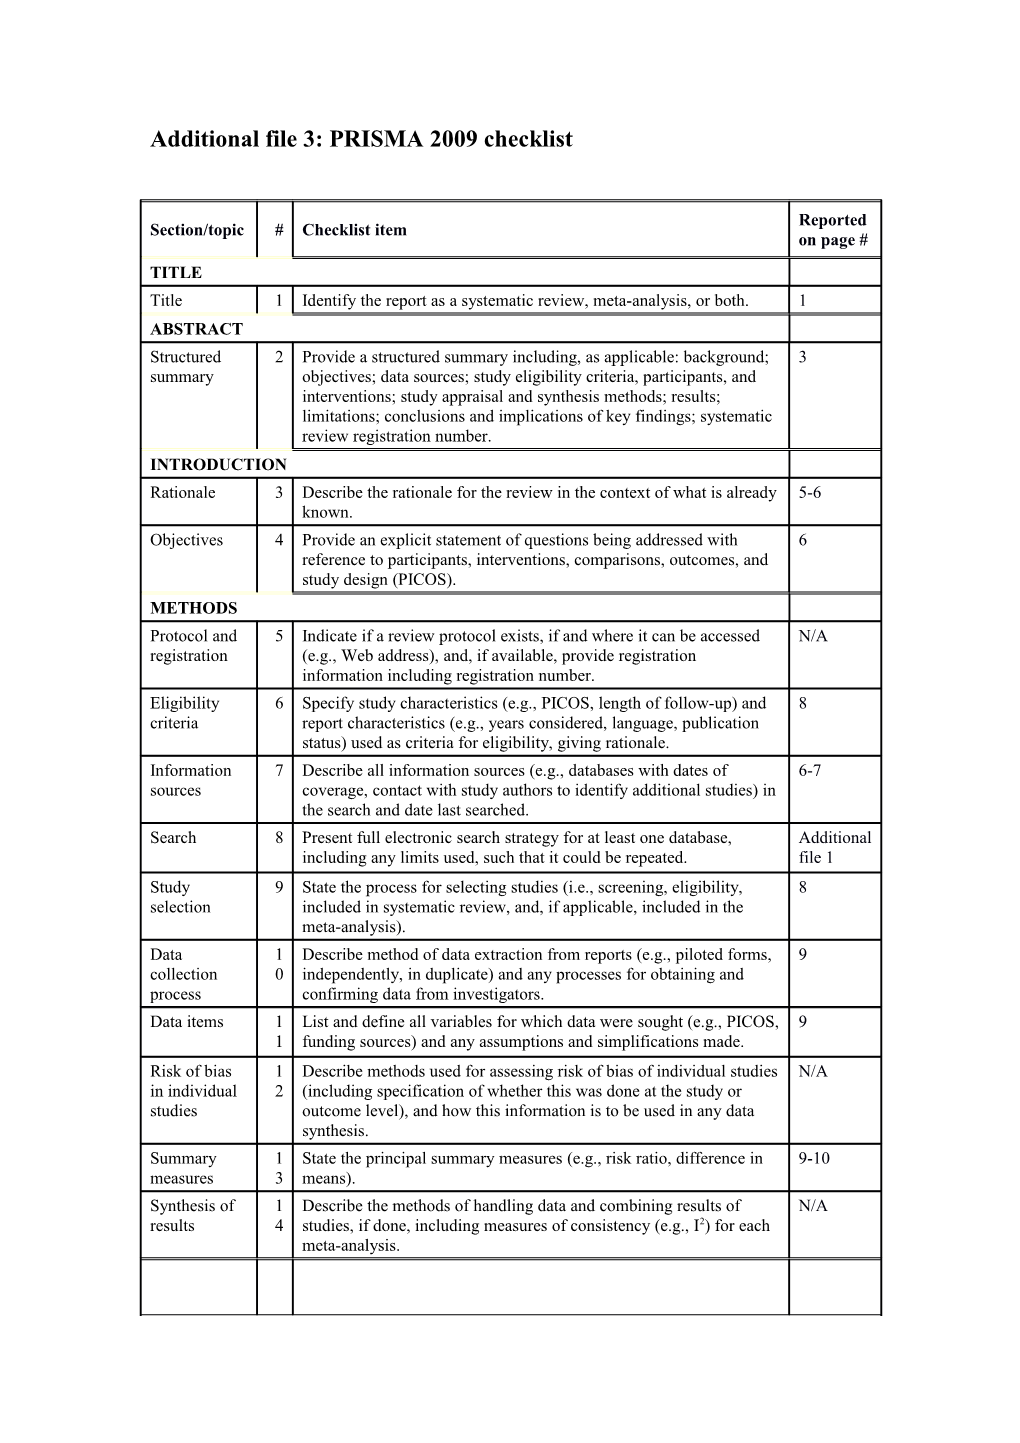 Additionalfile 3: PRISMA 2009 Checklist